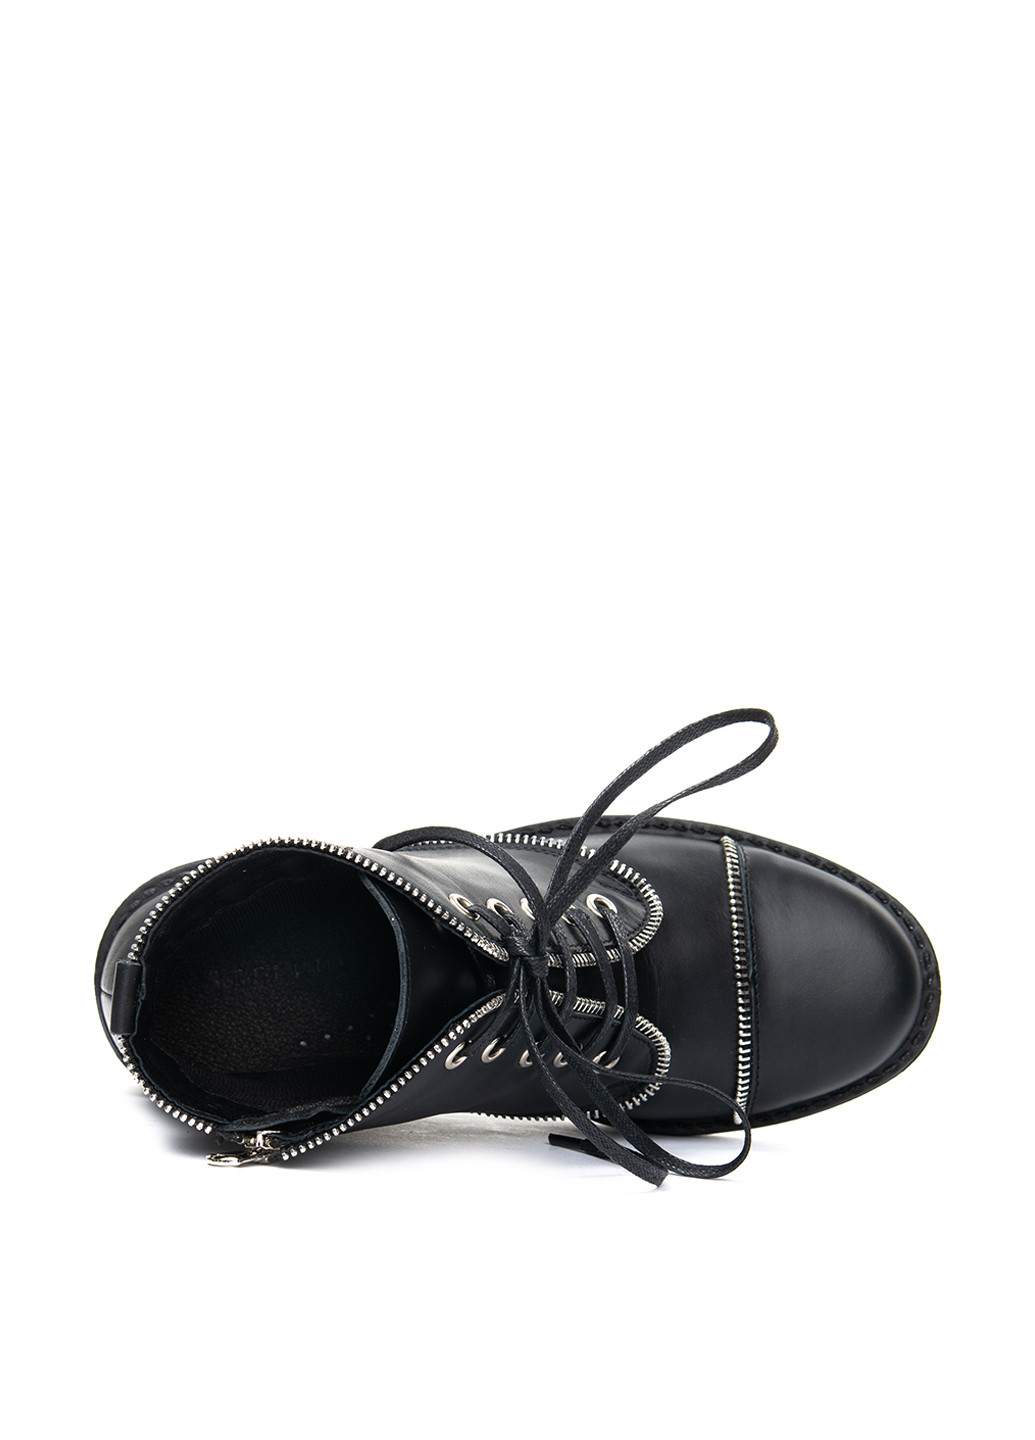 Осенние ботинки Tellus со шнуровкой